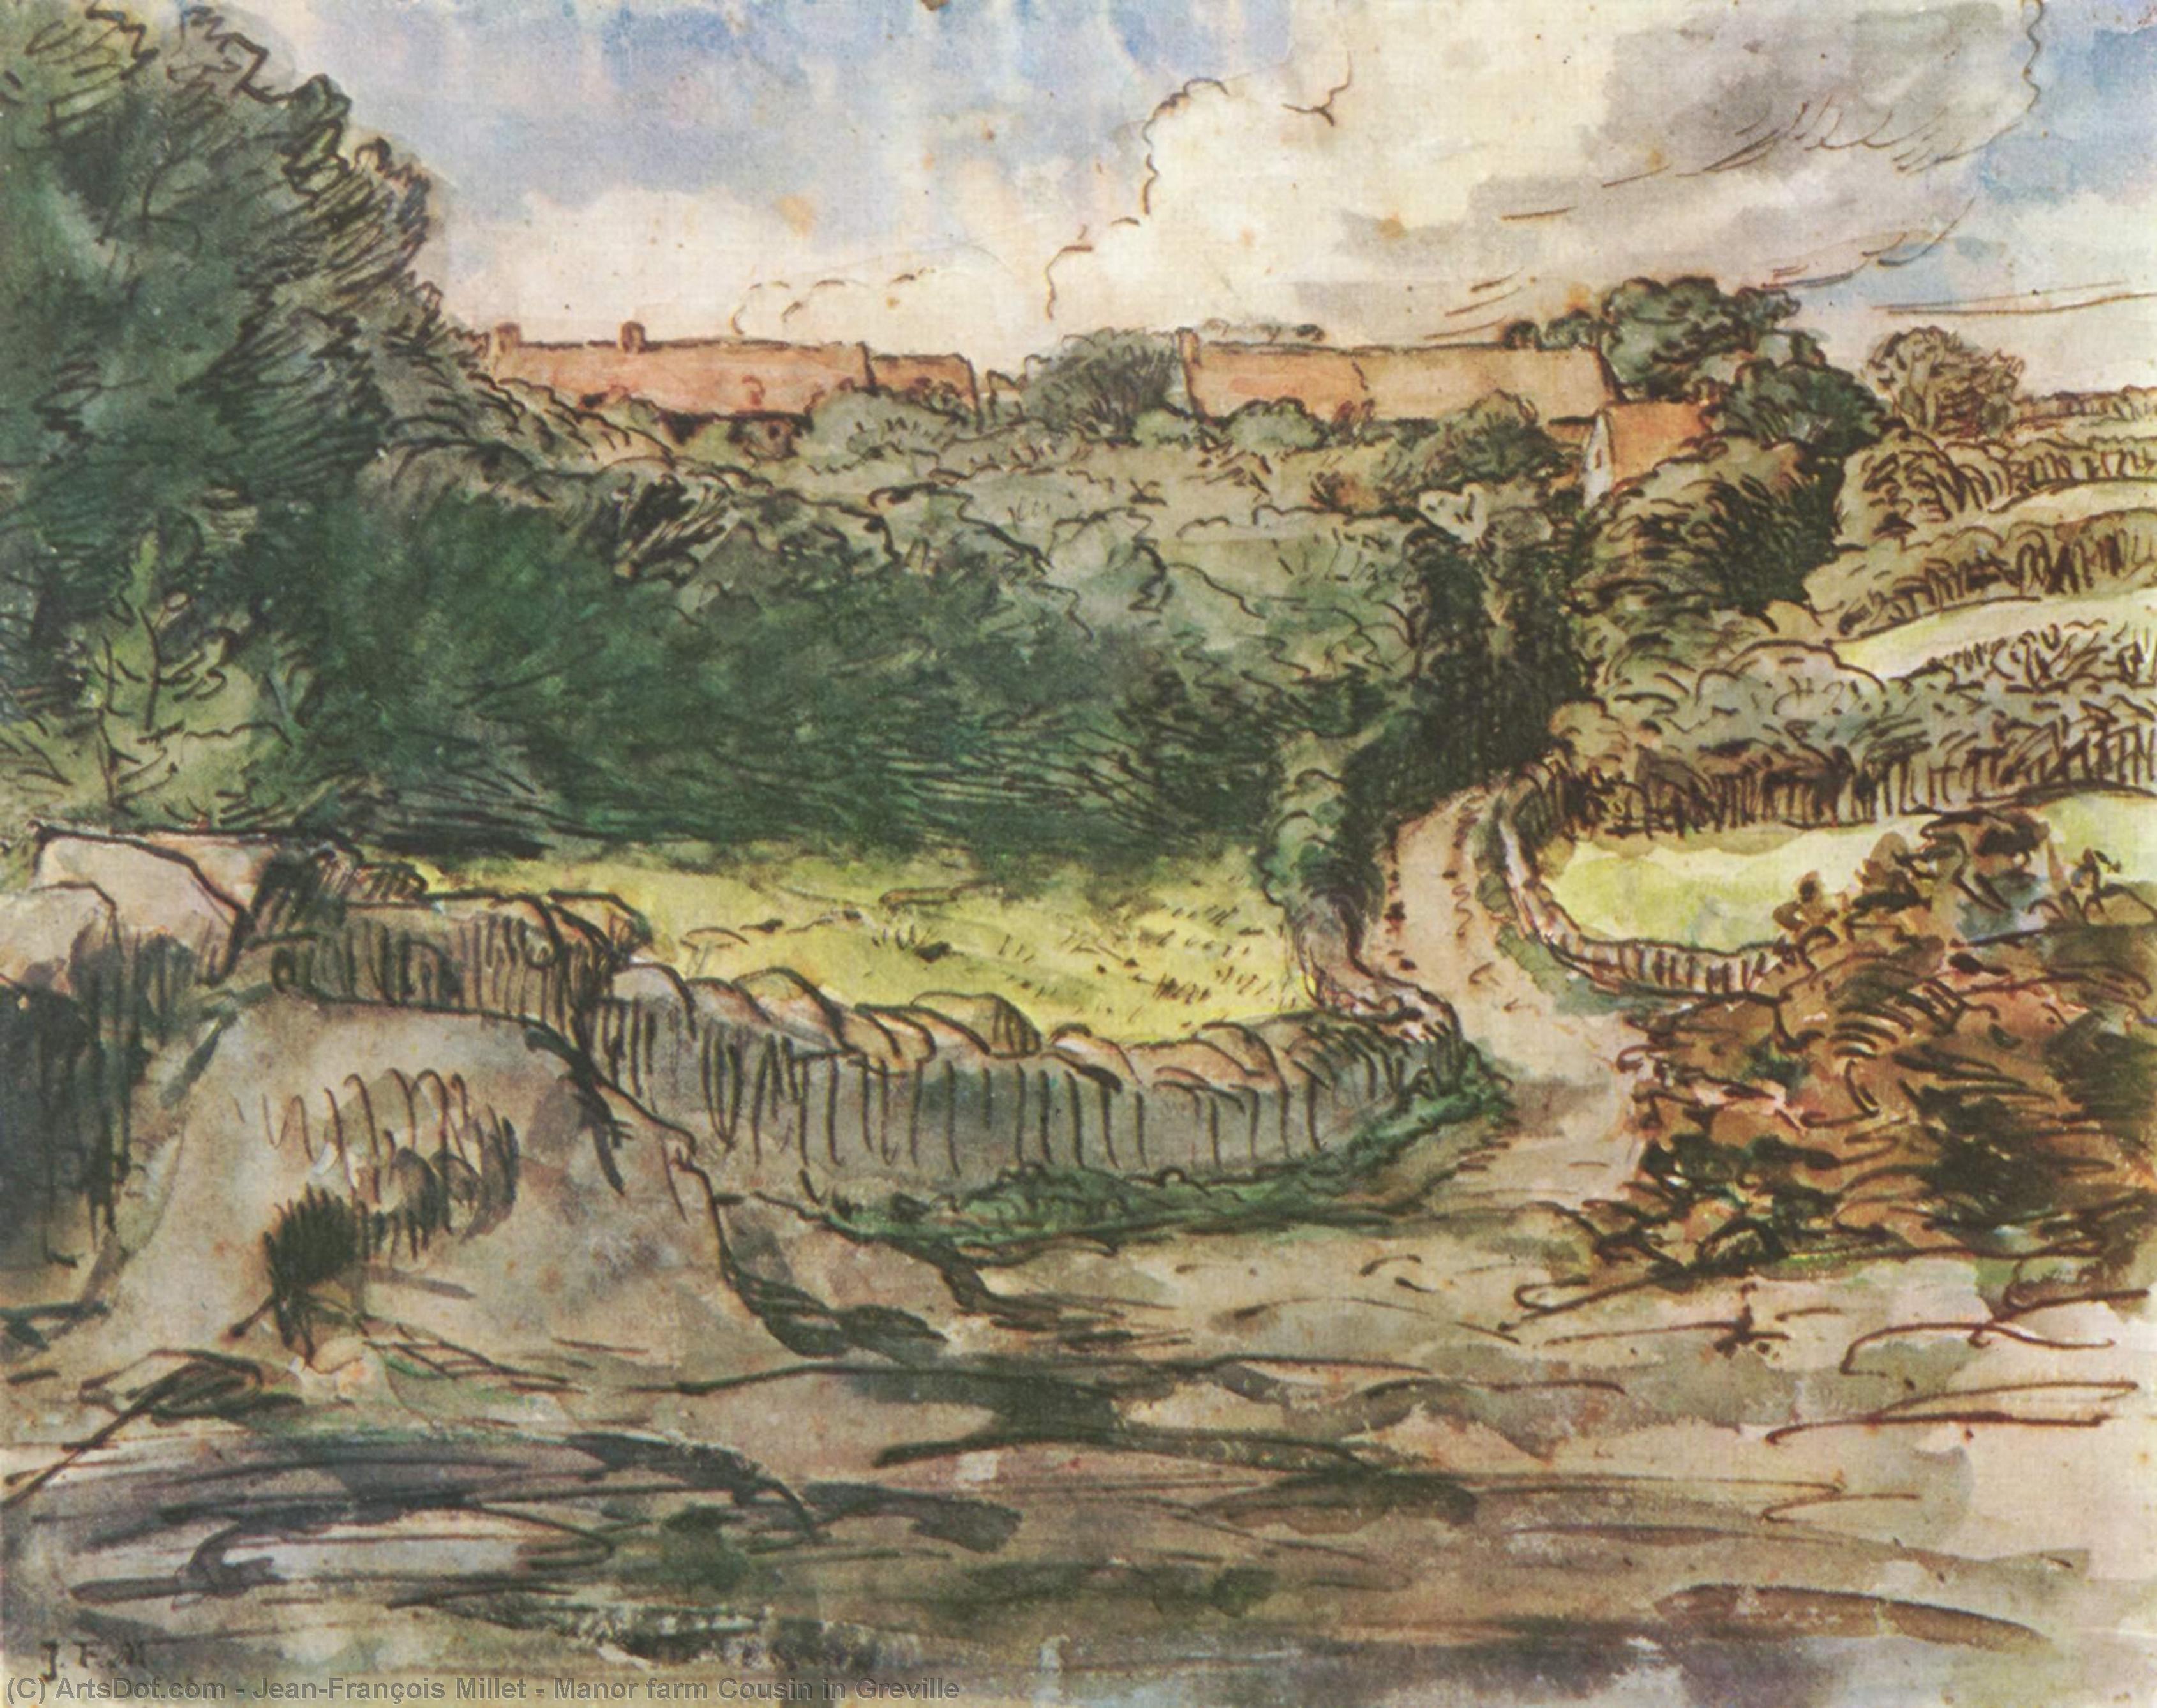 WikiOO.org - Enciklopedija likovnih umjetnosti - Slikarstvo, umjetnička djela Jean-François Millet - Manor farm Cousin in Greville